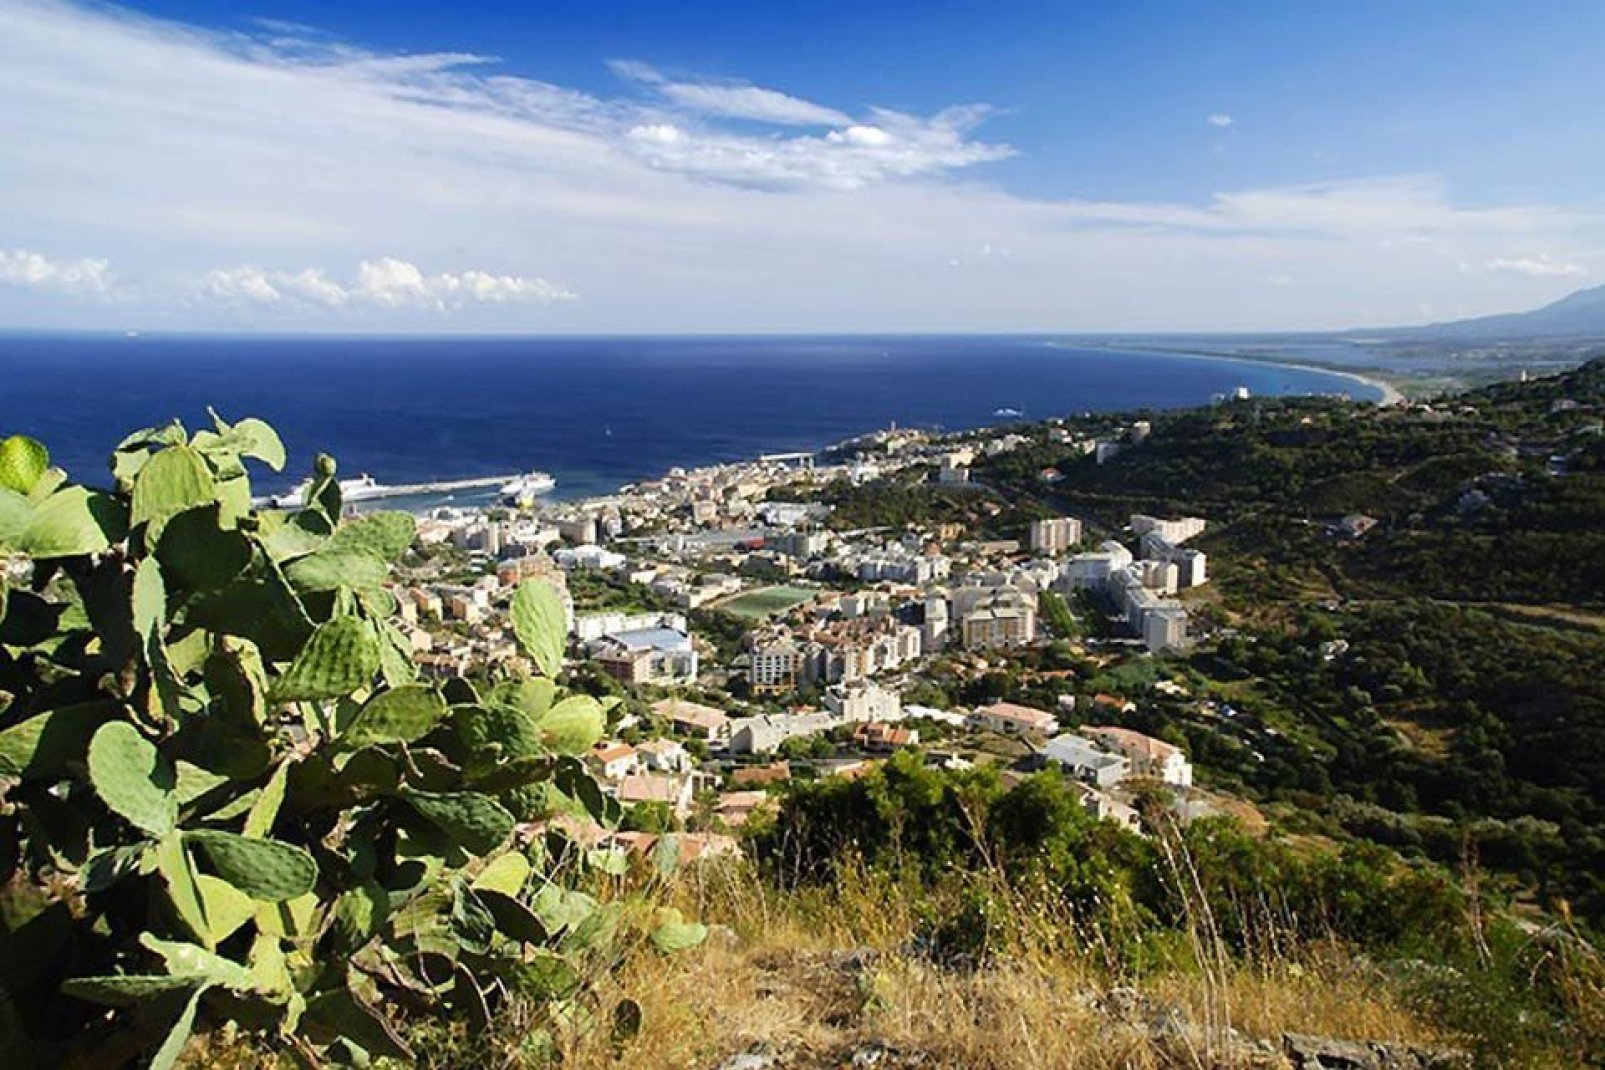 Die Unterstadt von Bastia erstreckt sich entlang der Küste. Man entdeckt hier den Mittelmeerhafen und ein malerisches Gassengeflecht.